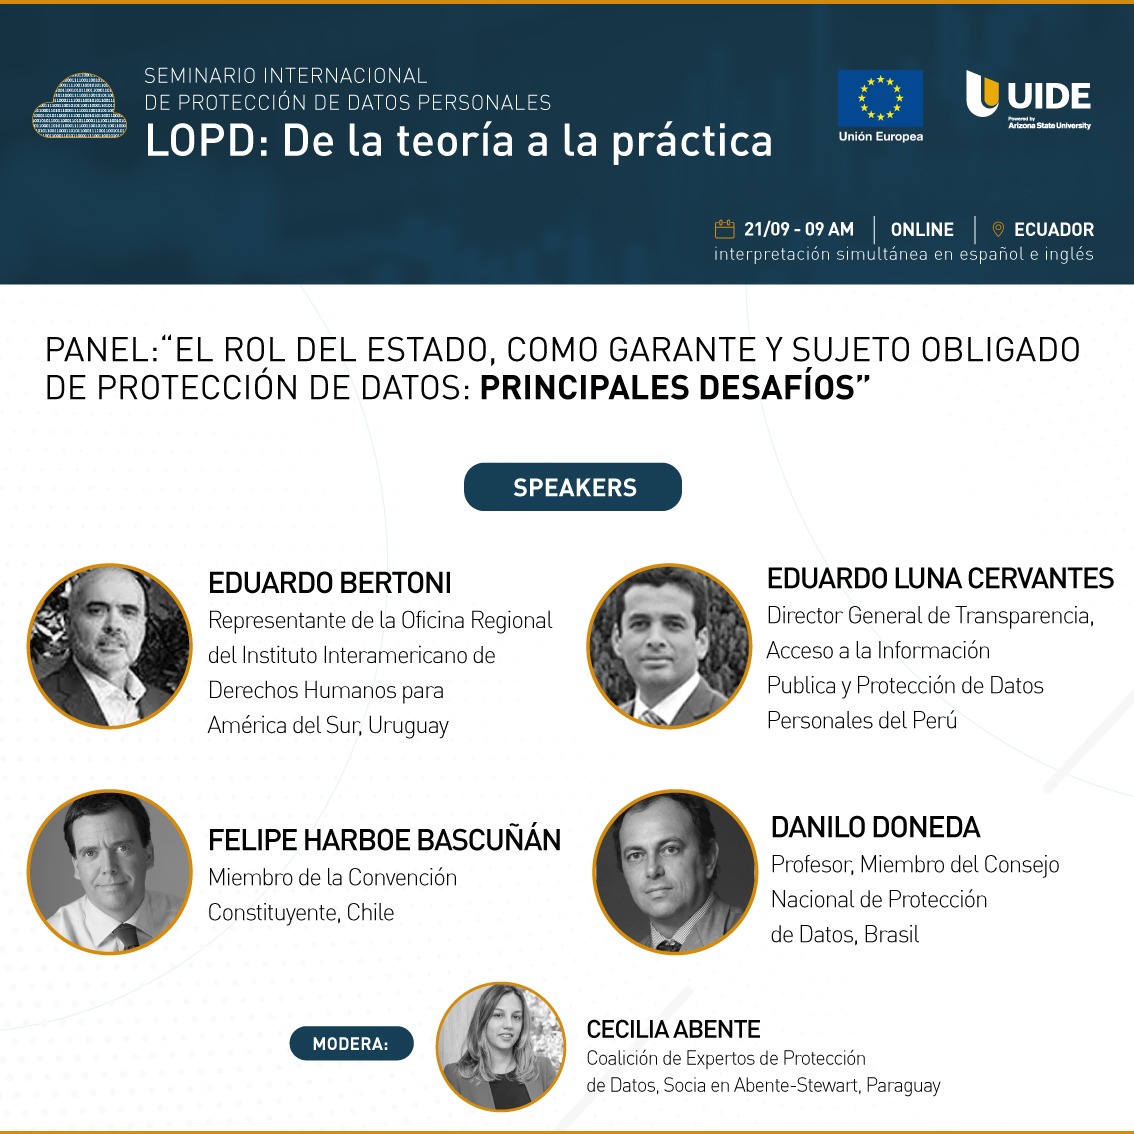 La delegación de la Unión Europea en Ecuador invita a seminario sobre el rol del Estado en la protección de datos